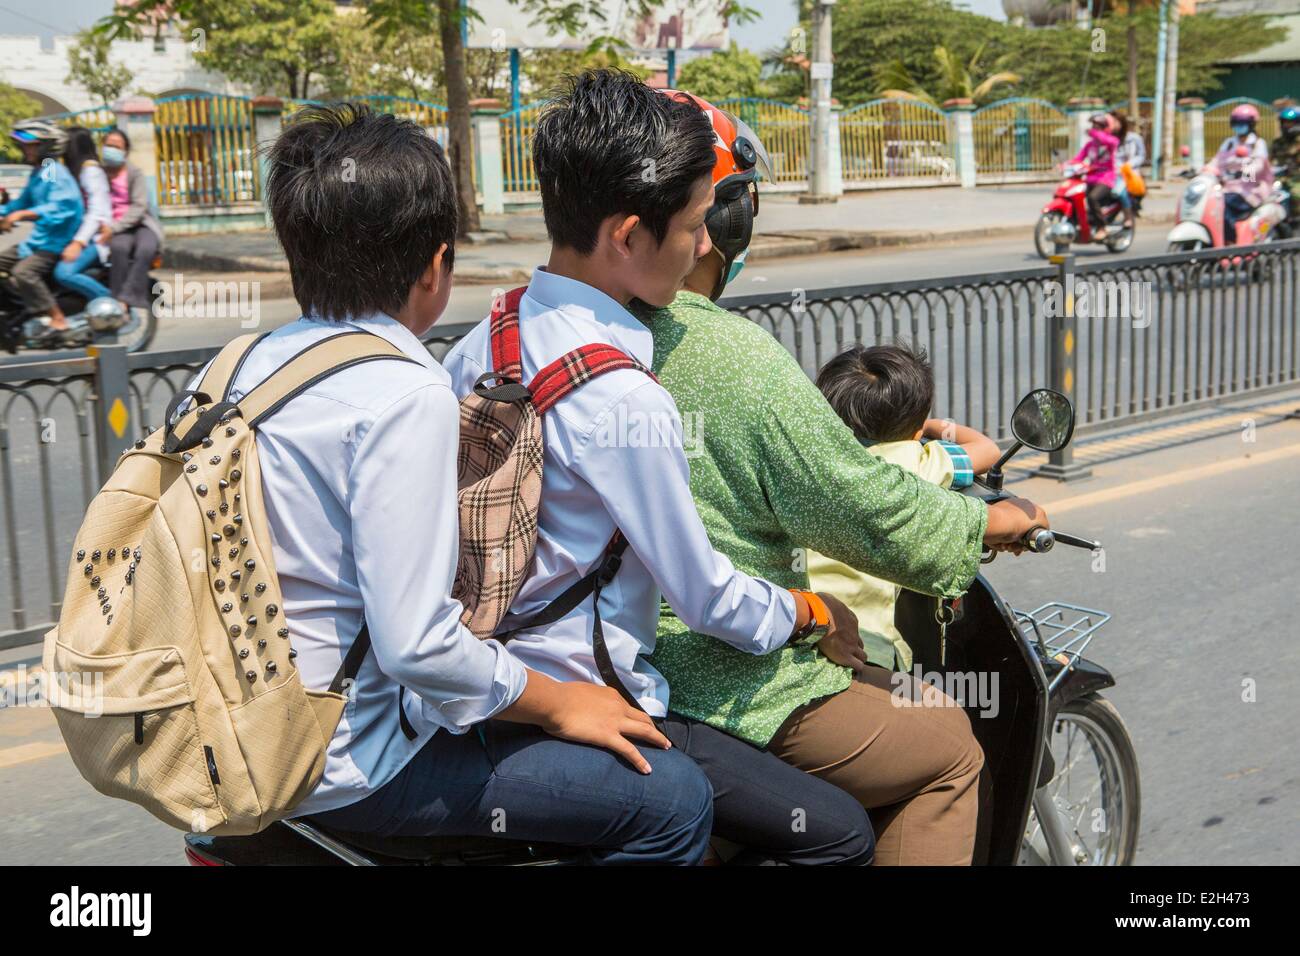 Cambogia Phnom Penh youngs su un moto taxi o moto- dop Foto Stock